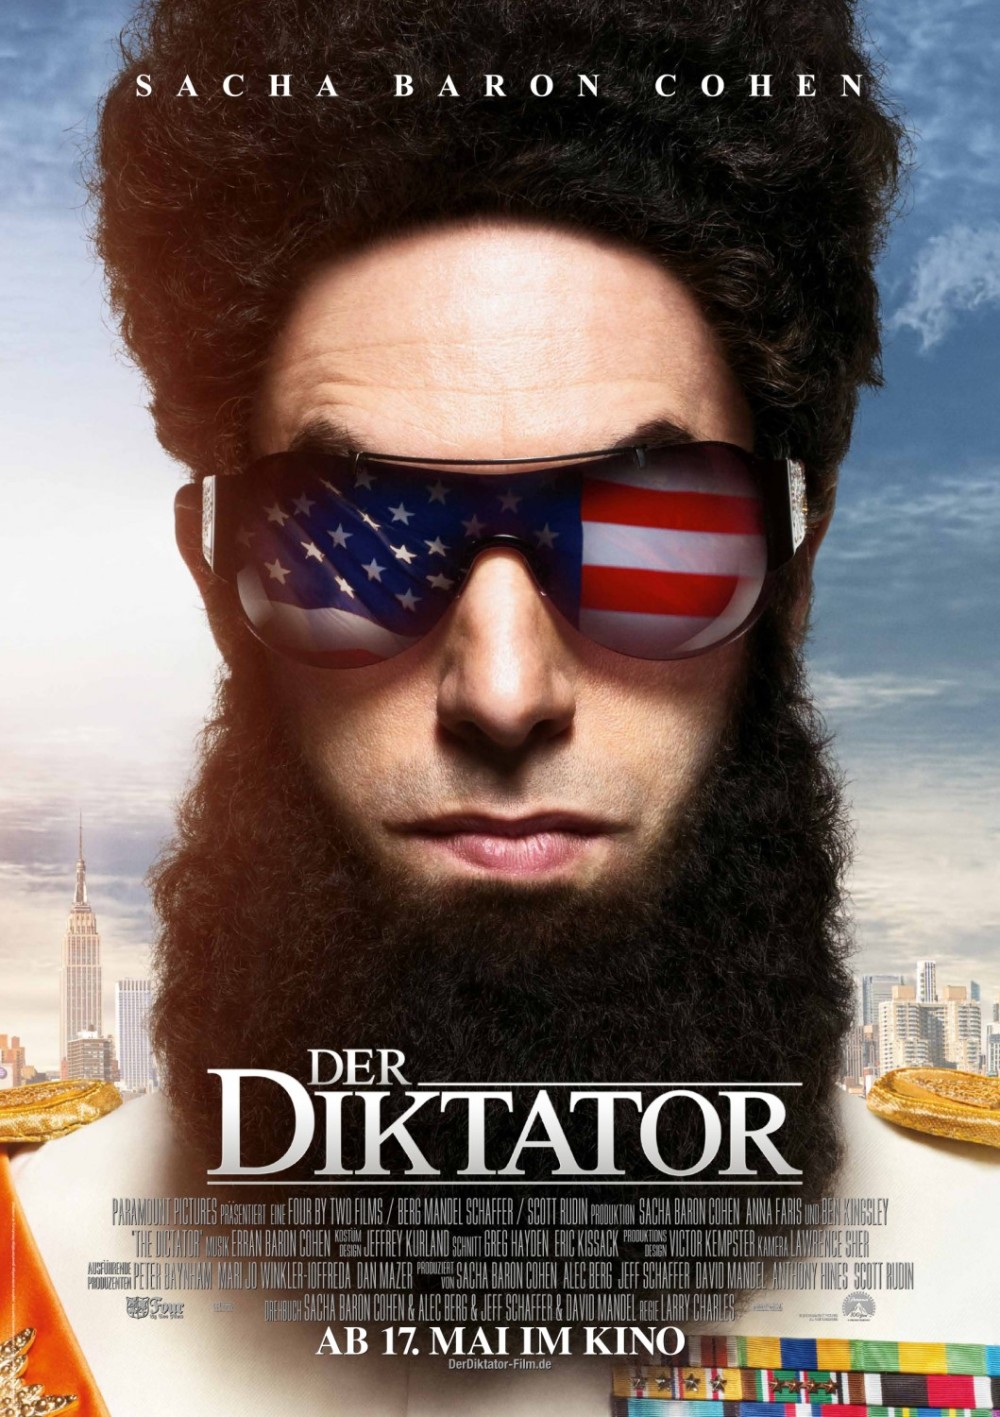 Nieuwe poster The Dictator heeft oogje op de States